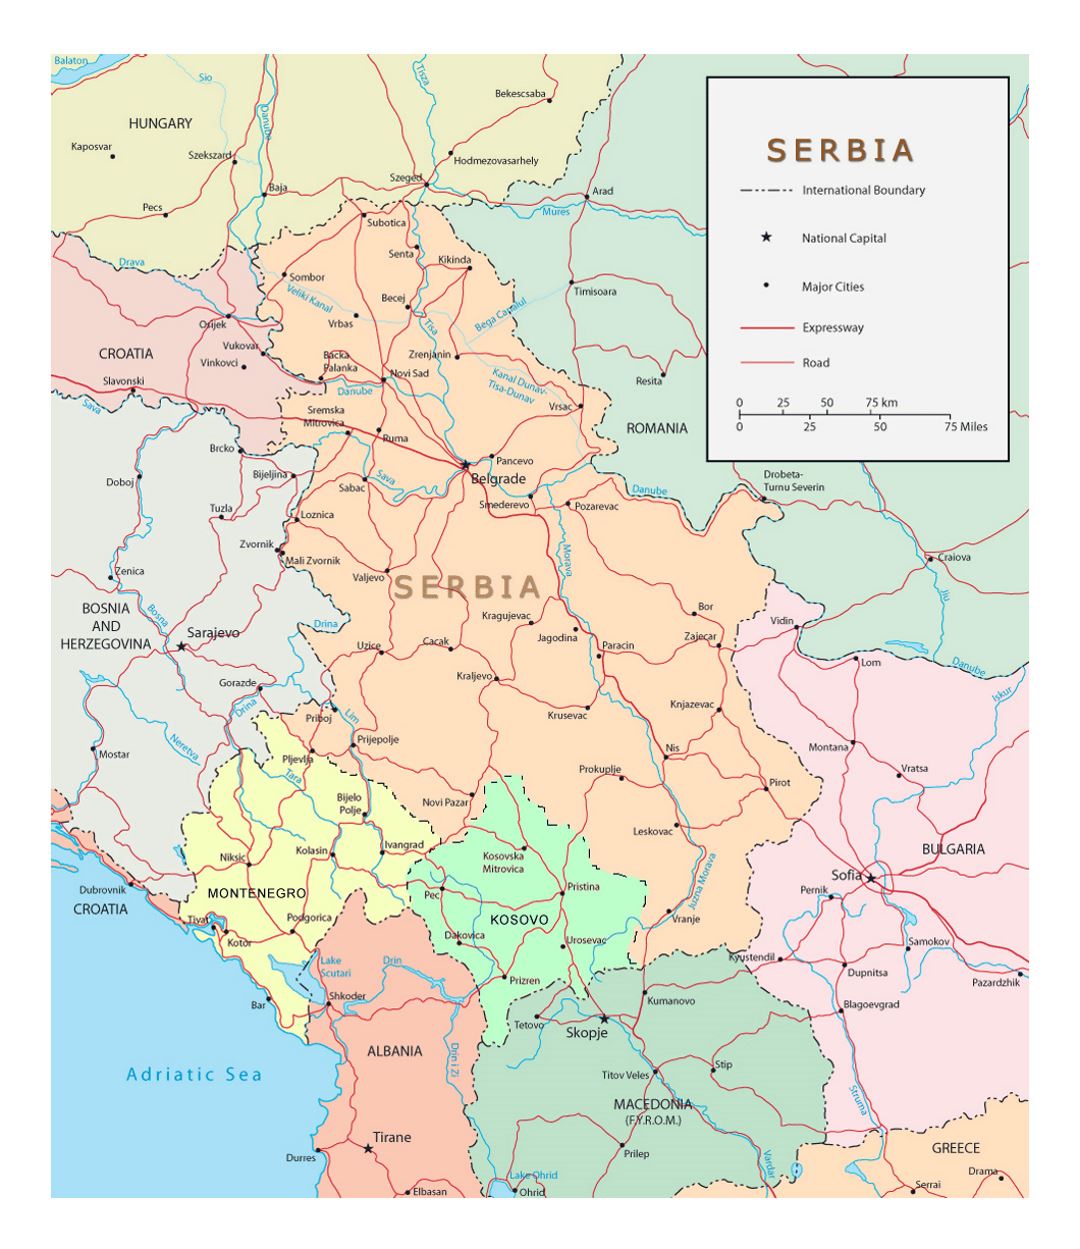 Detallado mapa político de Serbia con carreteras y ciudades importantes